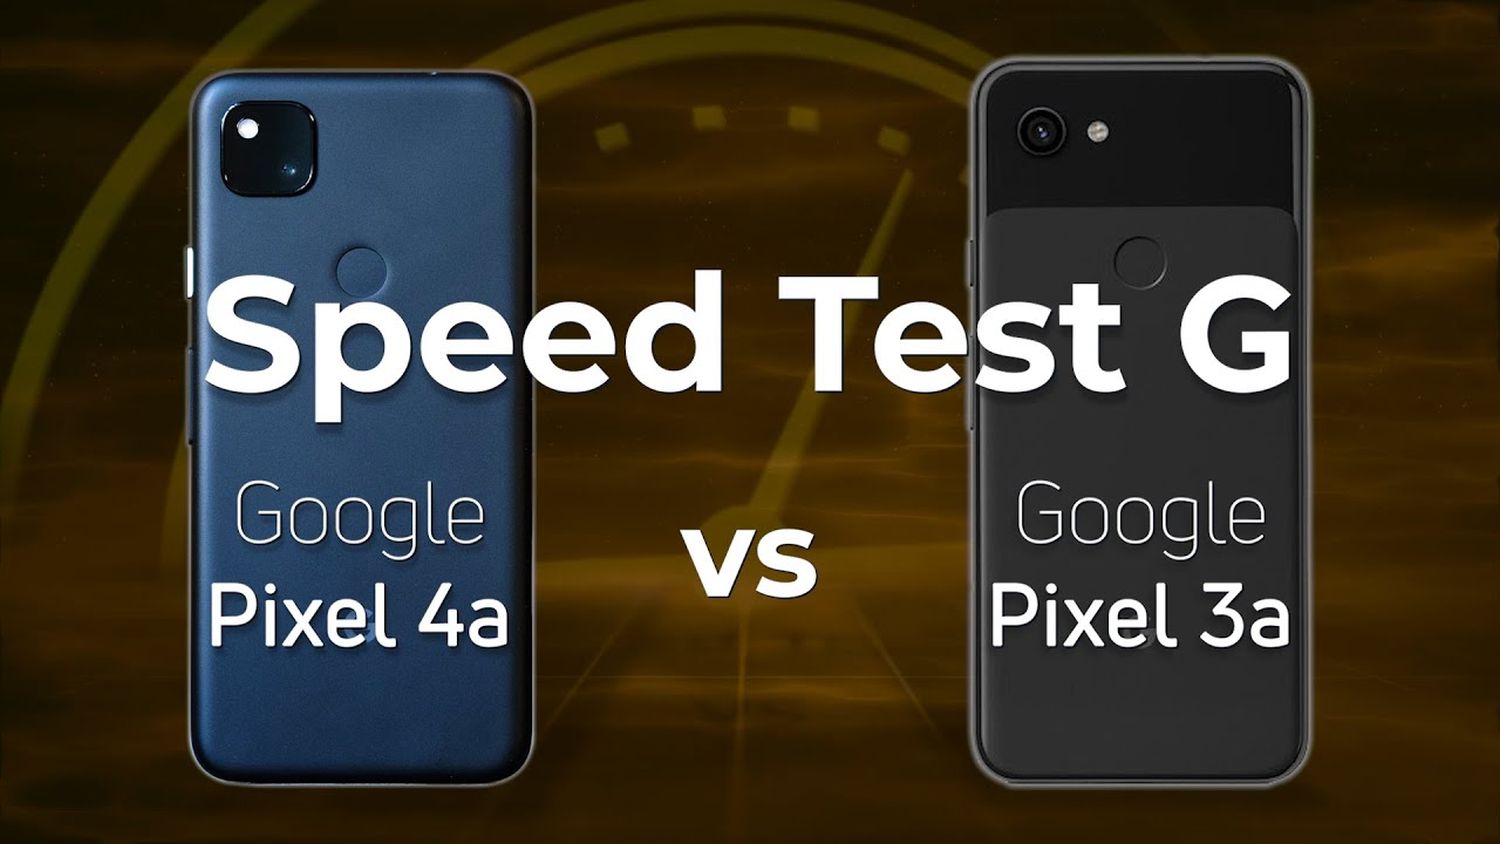 google pixel 4a vs google pixel 3a